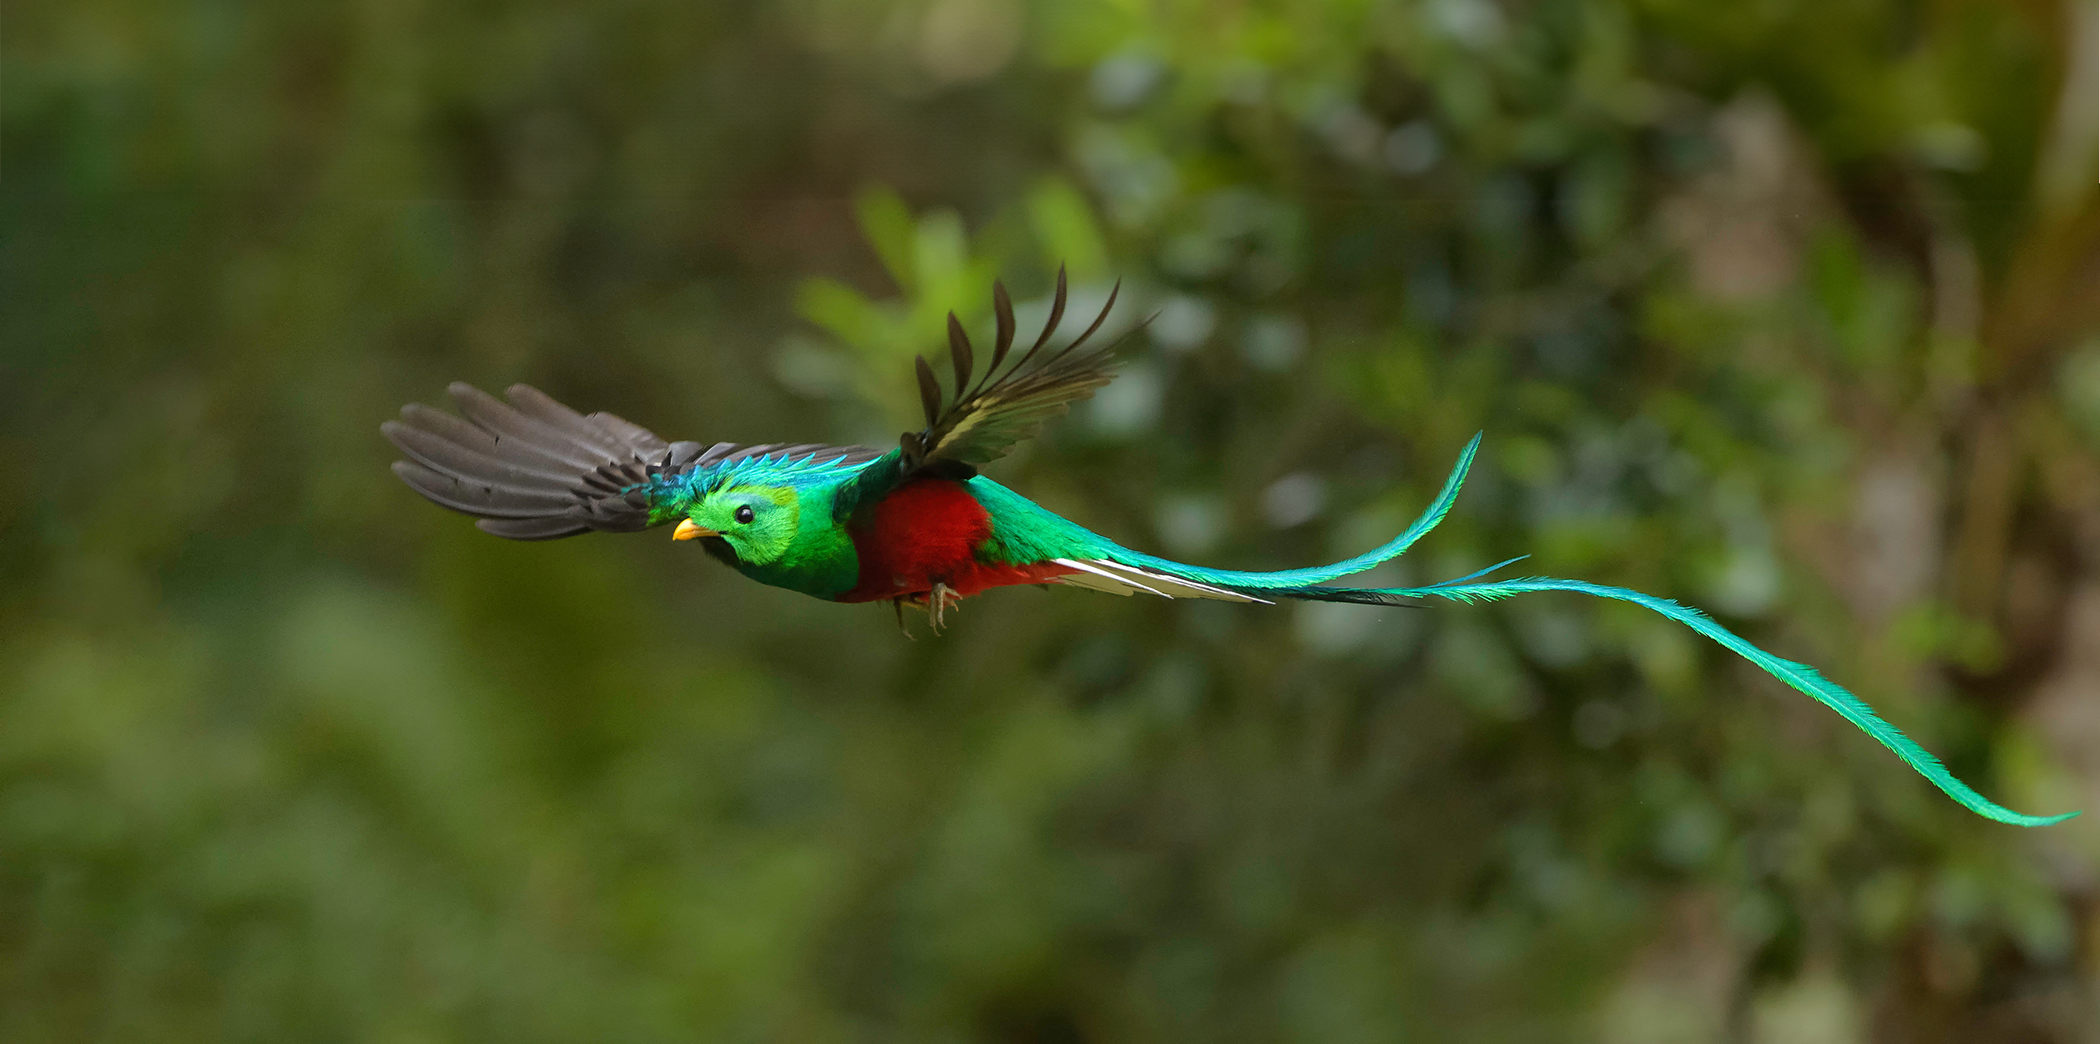 Un quetzal resplendissant mâle en plein vol. Sa tête est verte, ses plumes de queue turquoise et son ventre rouge vif. © Nino, Adobe Stock